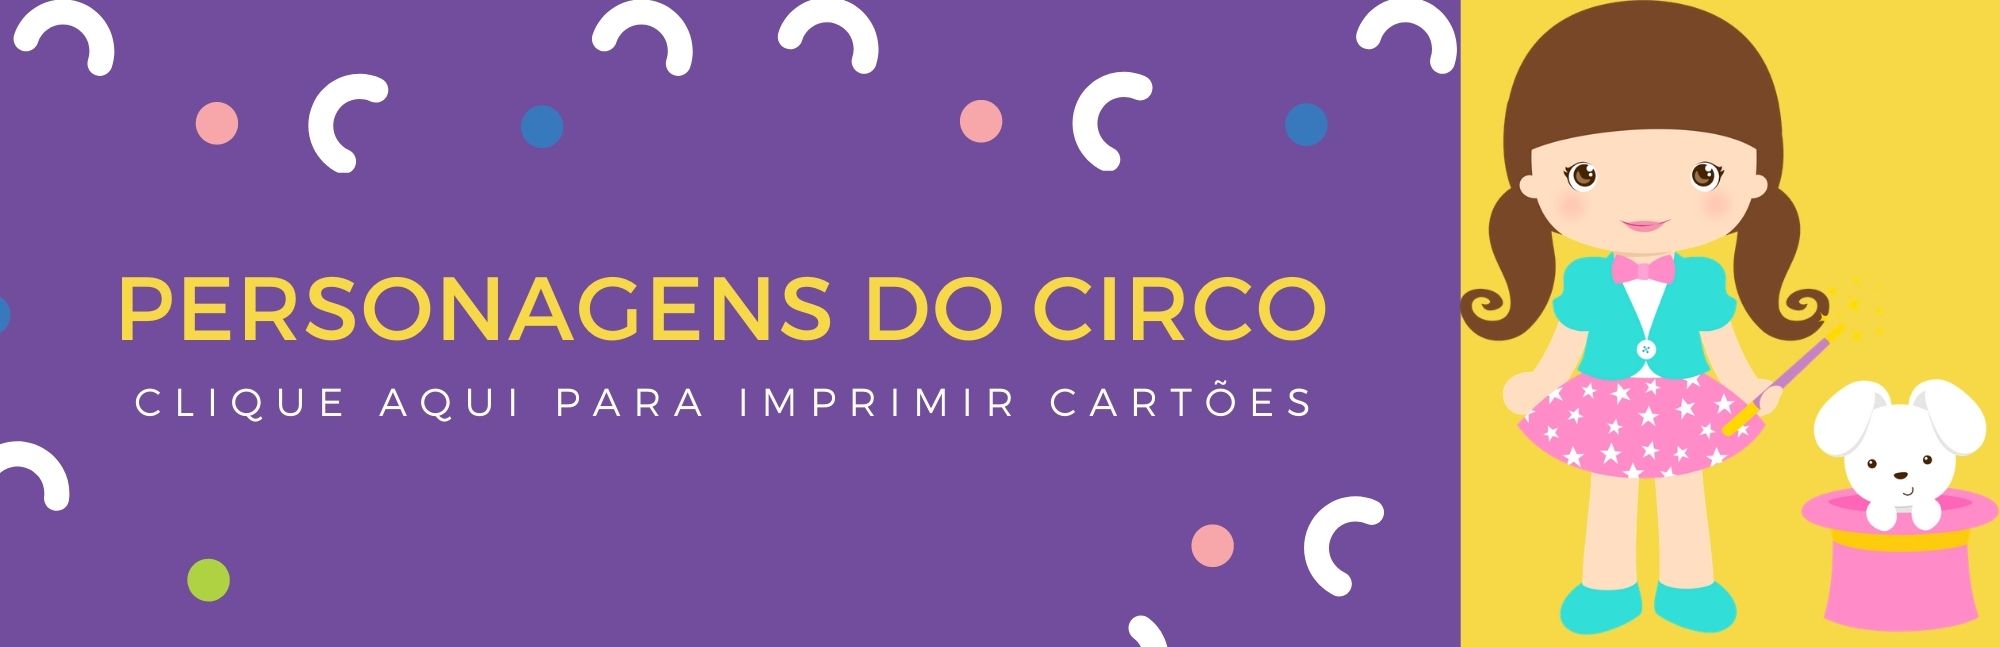 personagens do circo